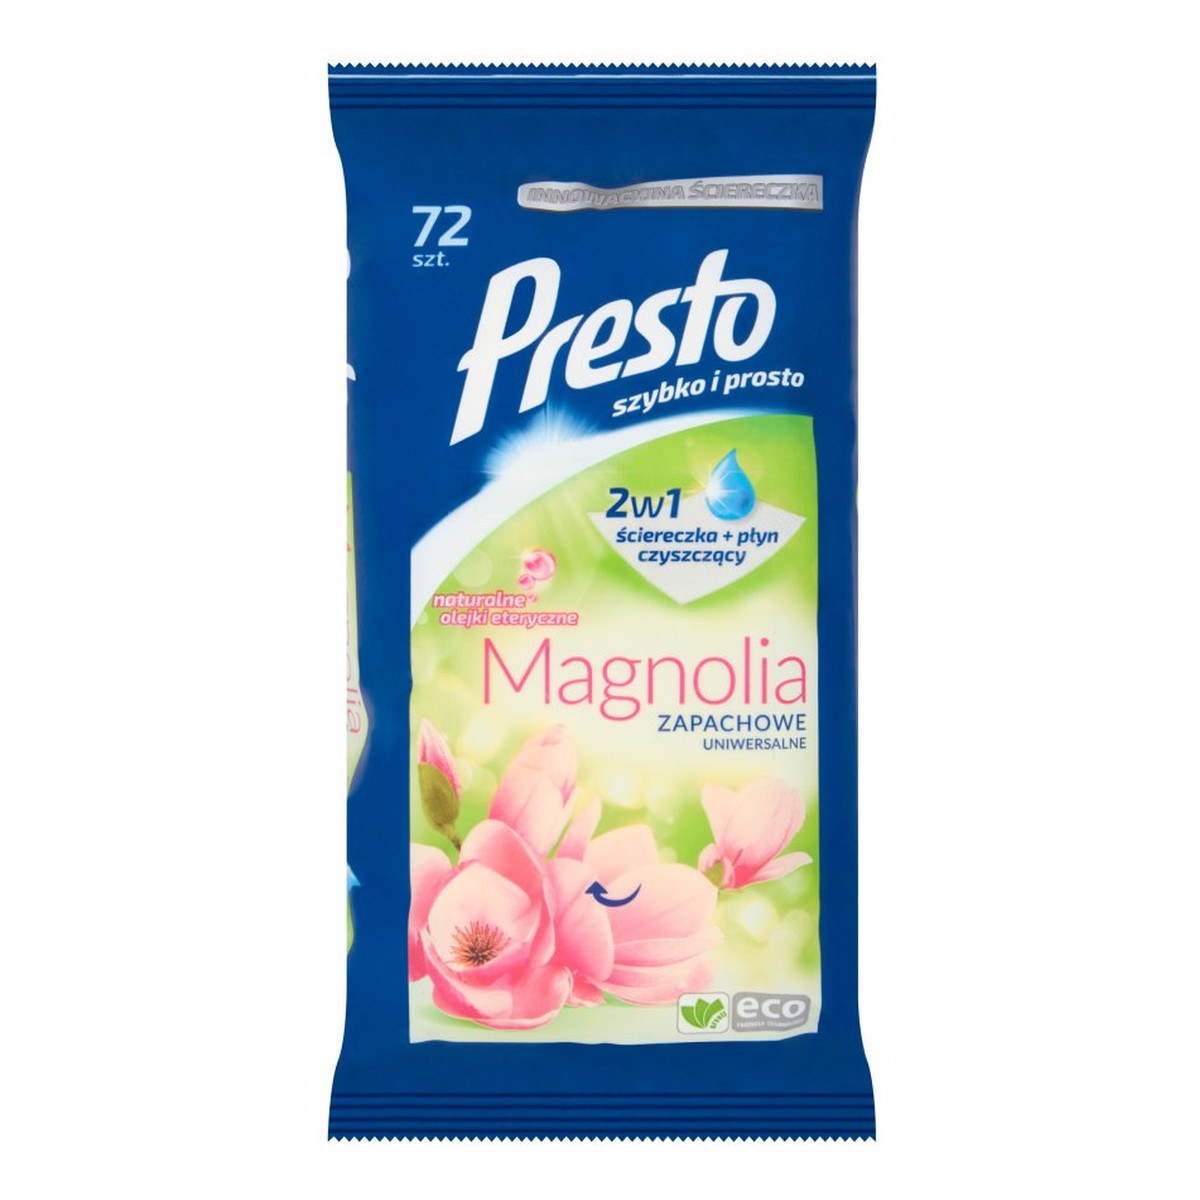 Presto Clean Magnolia zapachowe chusteczki uniwersalne do czyszczenia 2w1 72szt